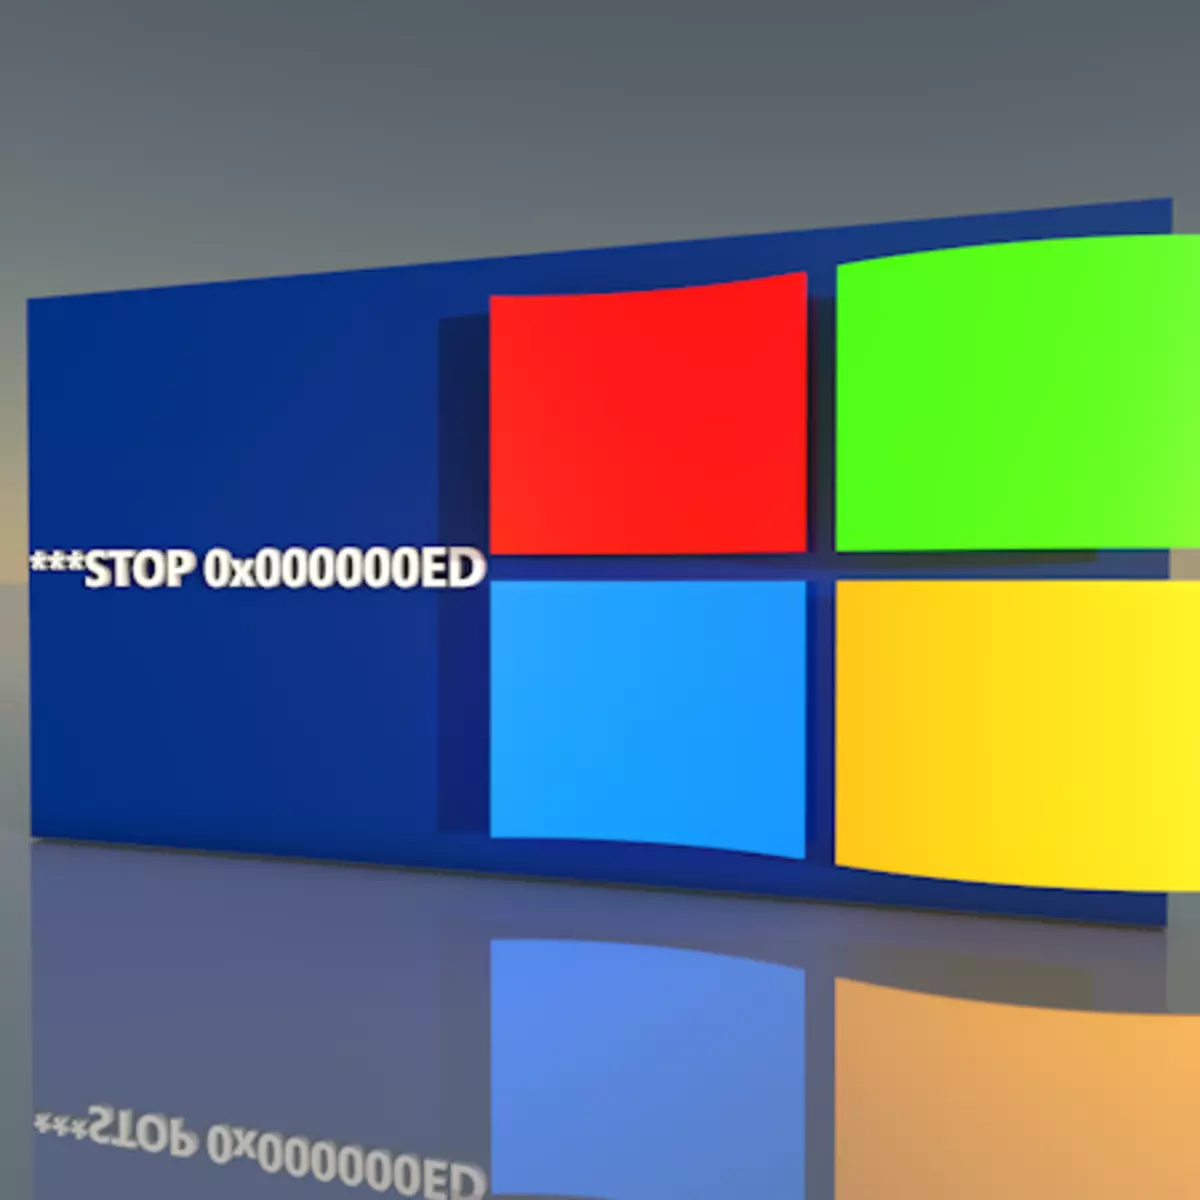 Nola zuzendu errorea "Stop 0x00000000eed" Windows XP abiaraztean